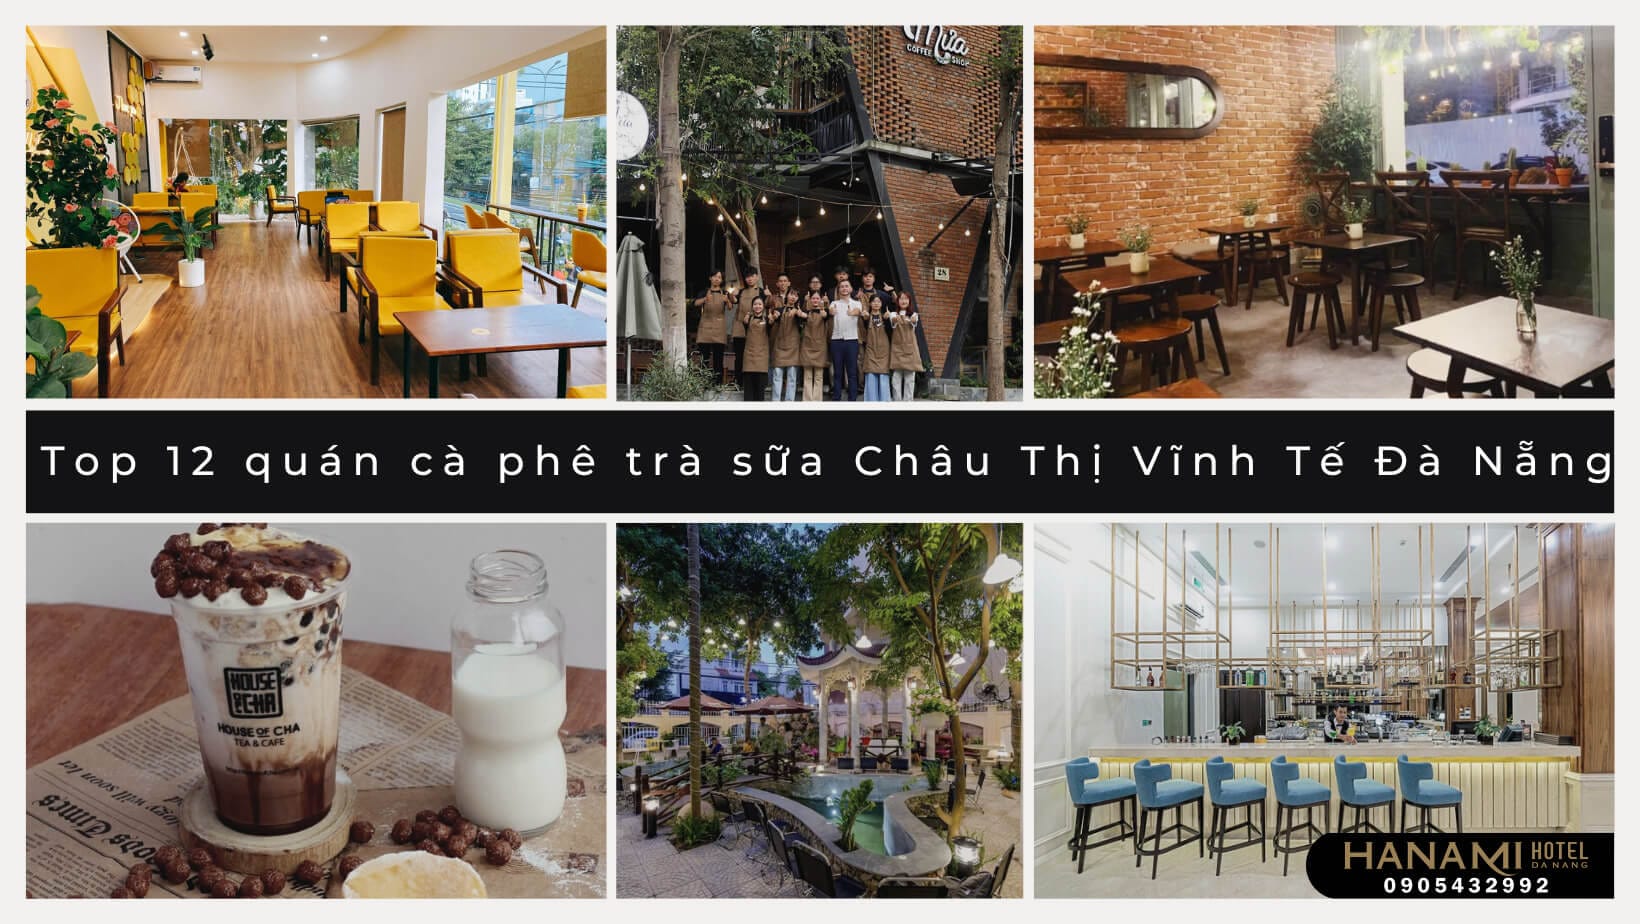  cà phê trà sữa Châu Thị Vĩnh Tế